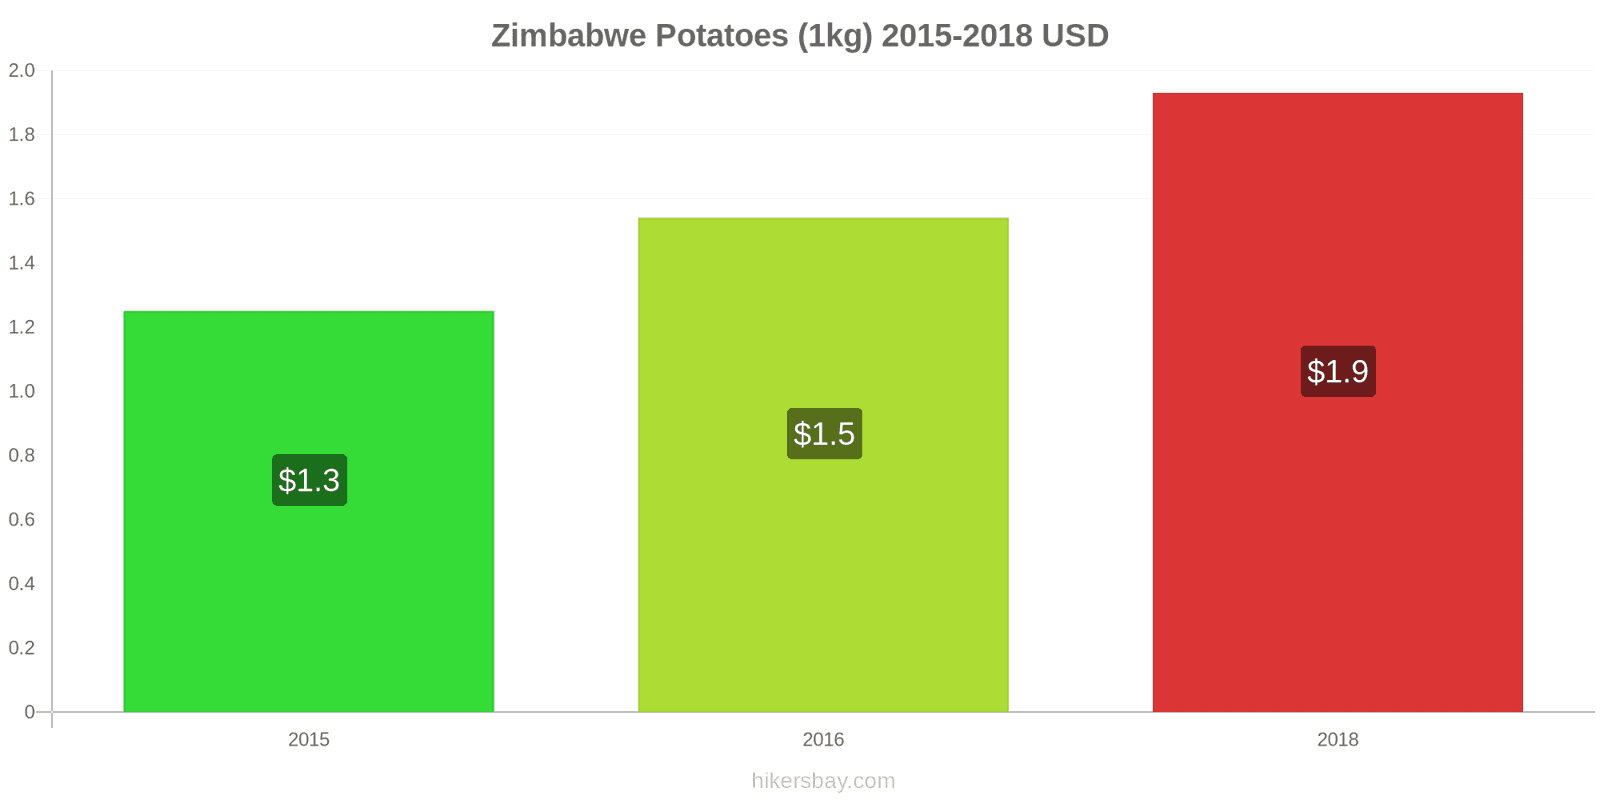 Zimbabwe price changes Potatoes (1kg) hikersbay.com